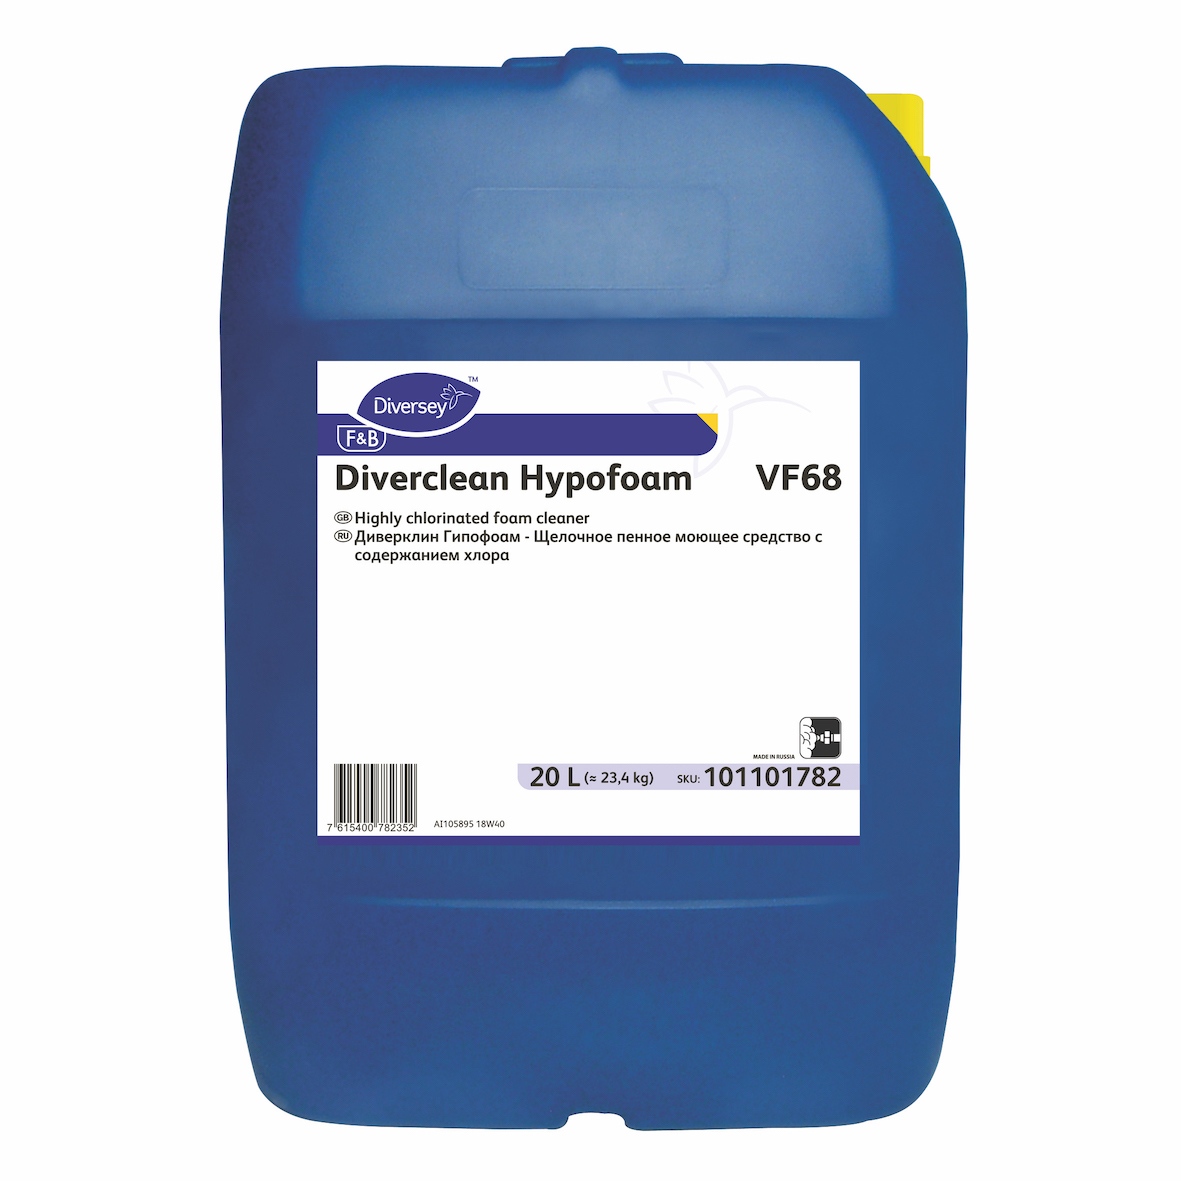 DIVERCLEAN HYPOFOAM - пенное щелочное средство, содержит хлор